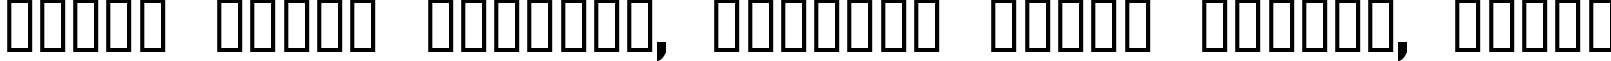 Пример написания шрифтом CType AOE текста на белорусском